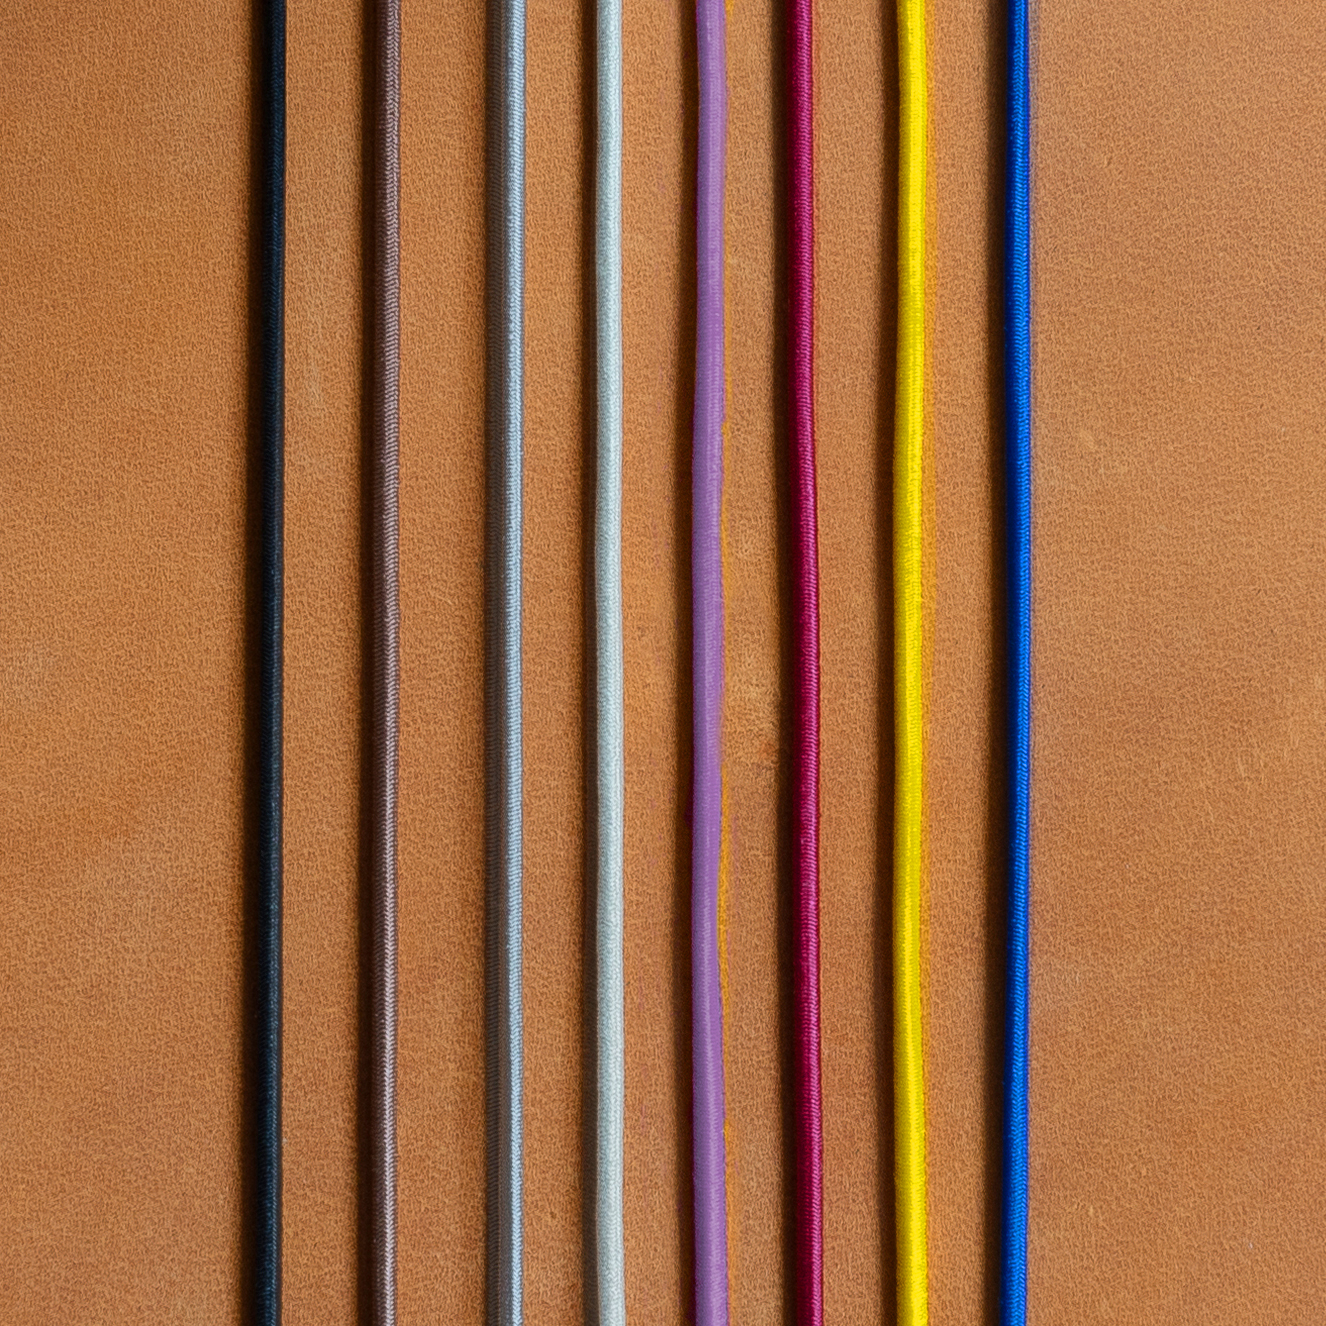 Gummibänder für Notizbuchhüllen in den Farben Schwarz, Braun, Grau, Creme, Rot, Gelb und Blau auf cognacfarbenem Naturleder.